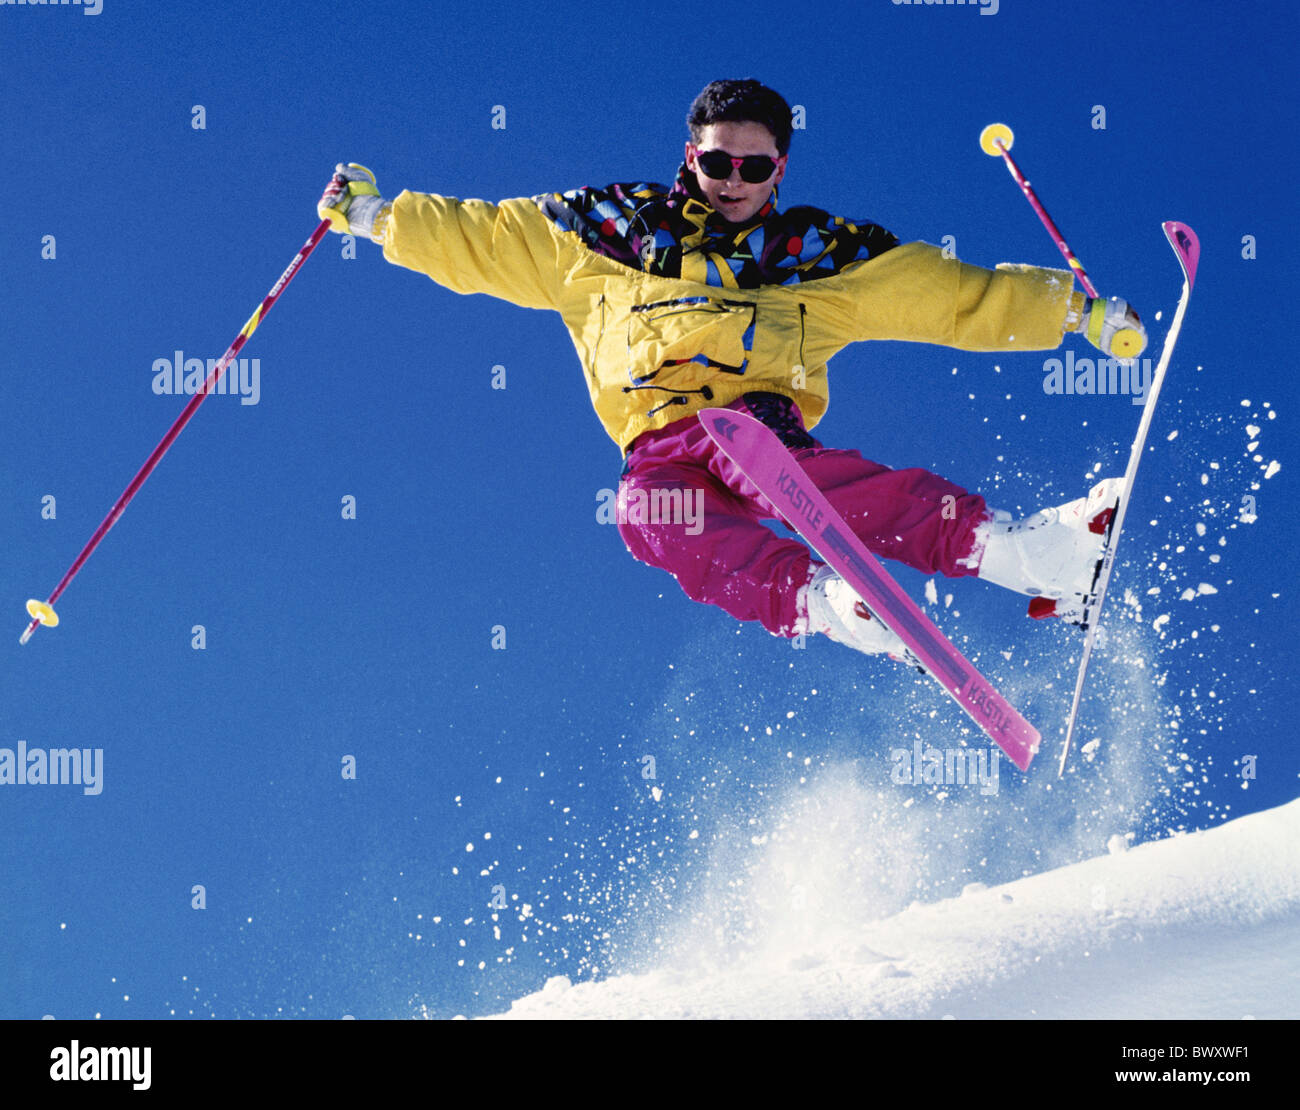 Deportes invierno esquí deporte montañas dinámica descripción chaqueta amarilla Coat pantalones pantalones rosa hombre sk Fotografía de stock -